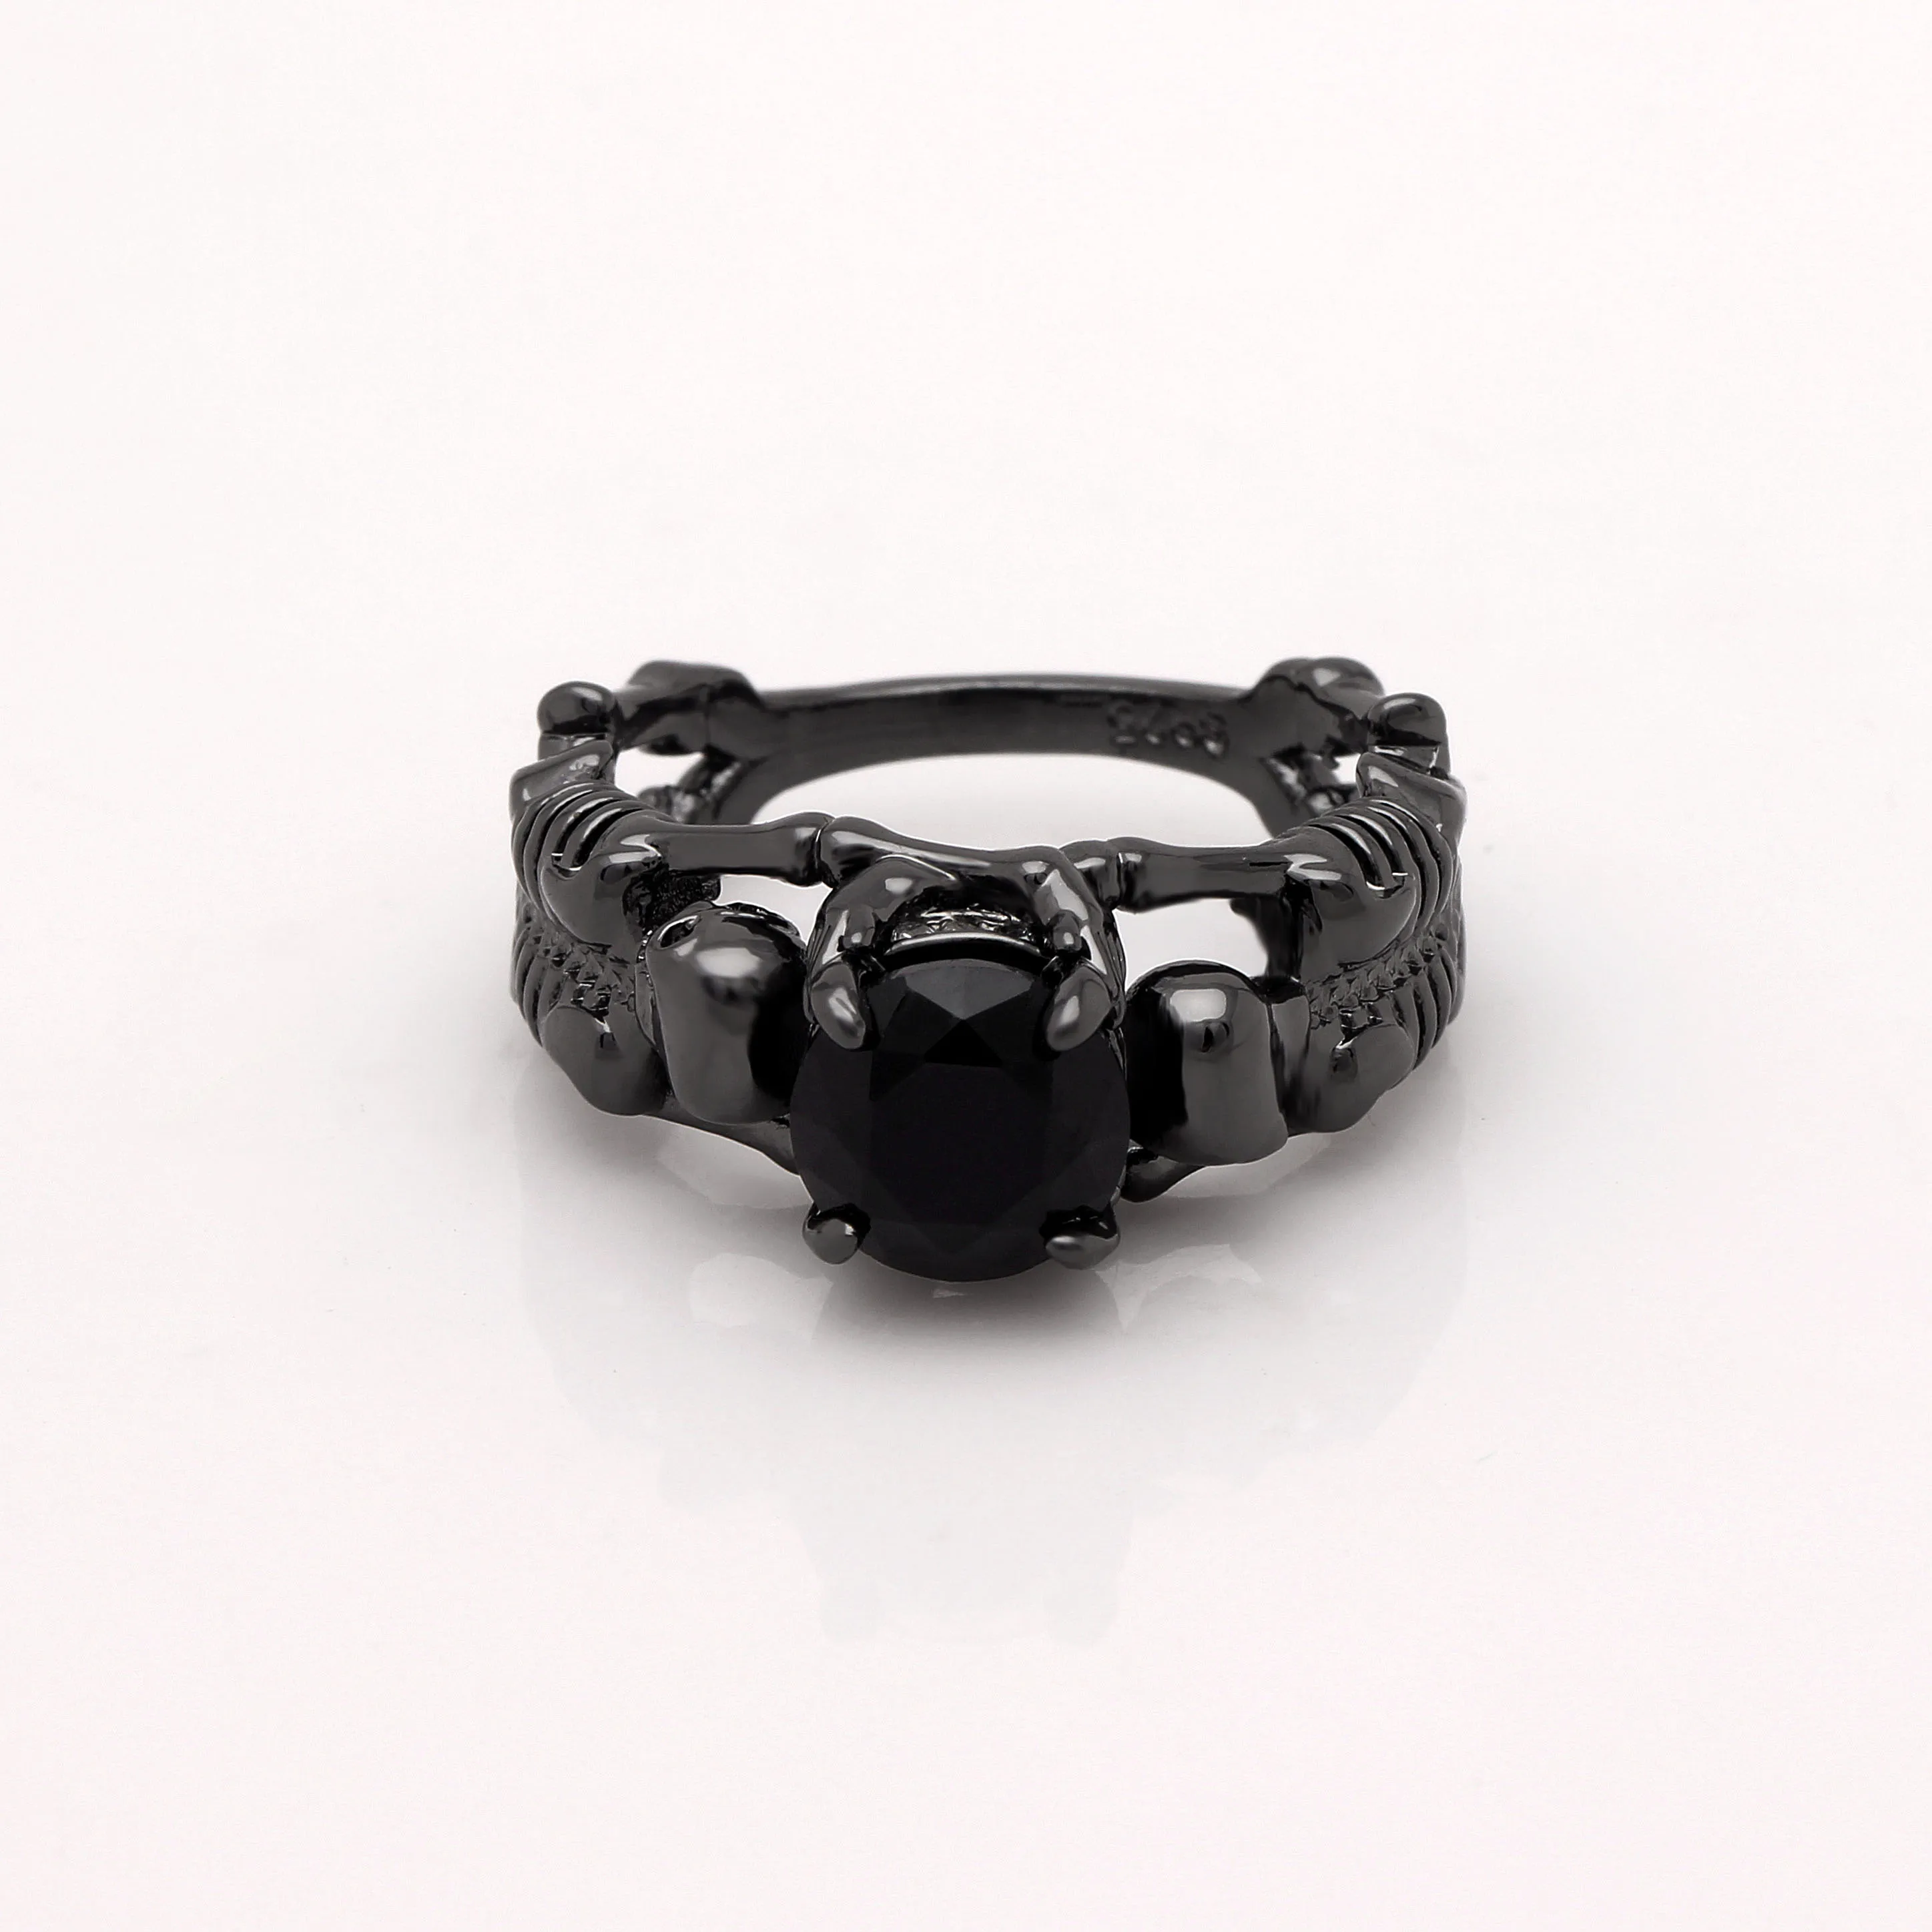 Ghost evil Skull skeleton Hand CZ кольцо европейский и американский стиль панк мотоцикл байкер мужское кольцо Новинка череп мужские ювелирные изделия